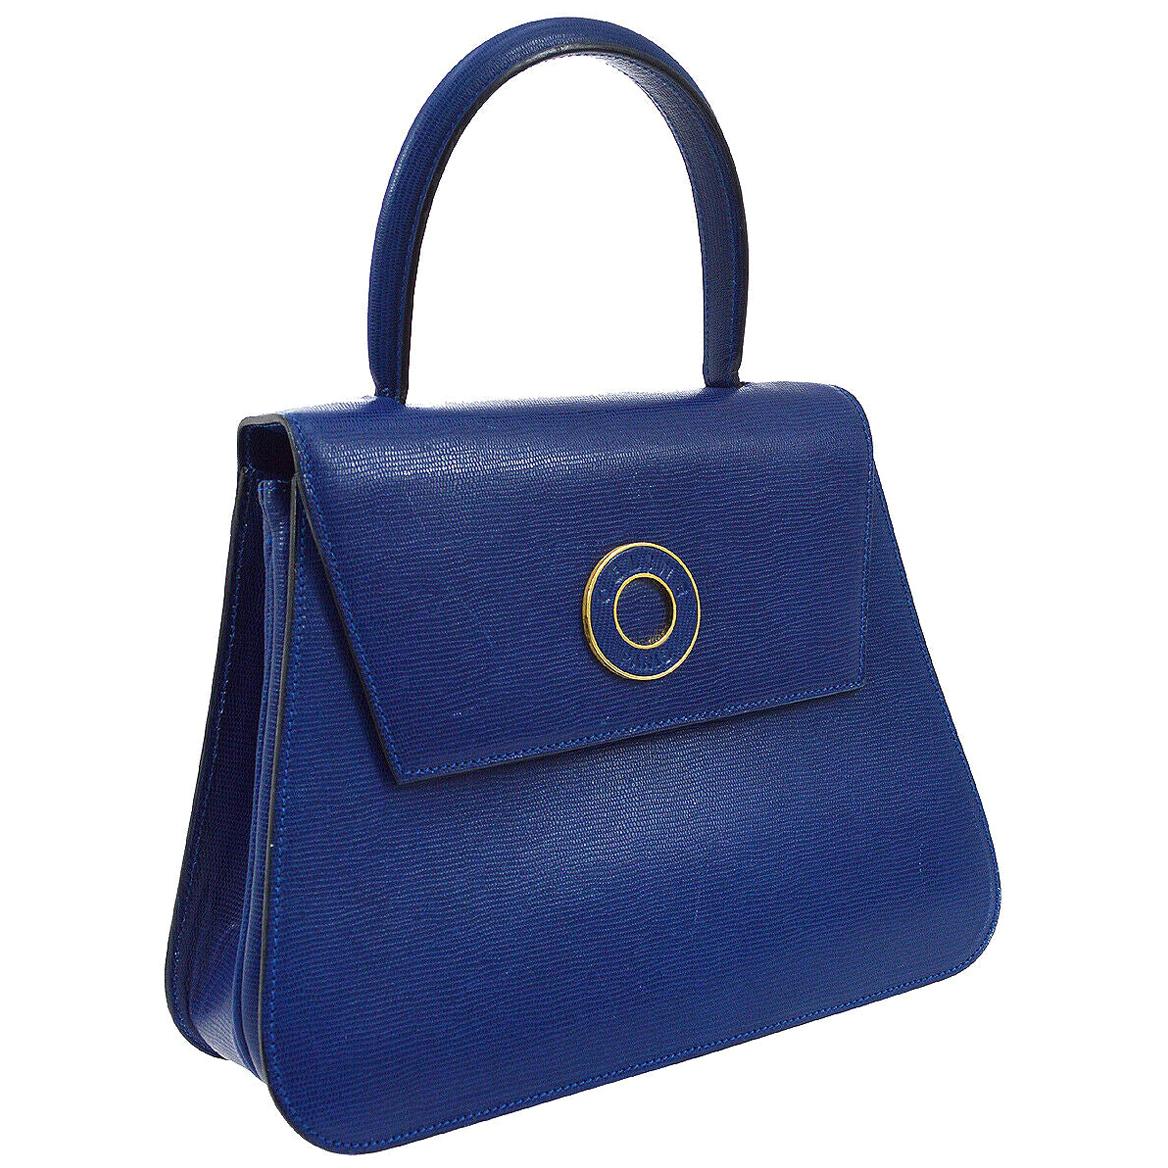 Celine Blue Leather 2 in 1 Gold Top Handle Satchel Kelly Style Shoulder Bag